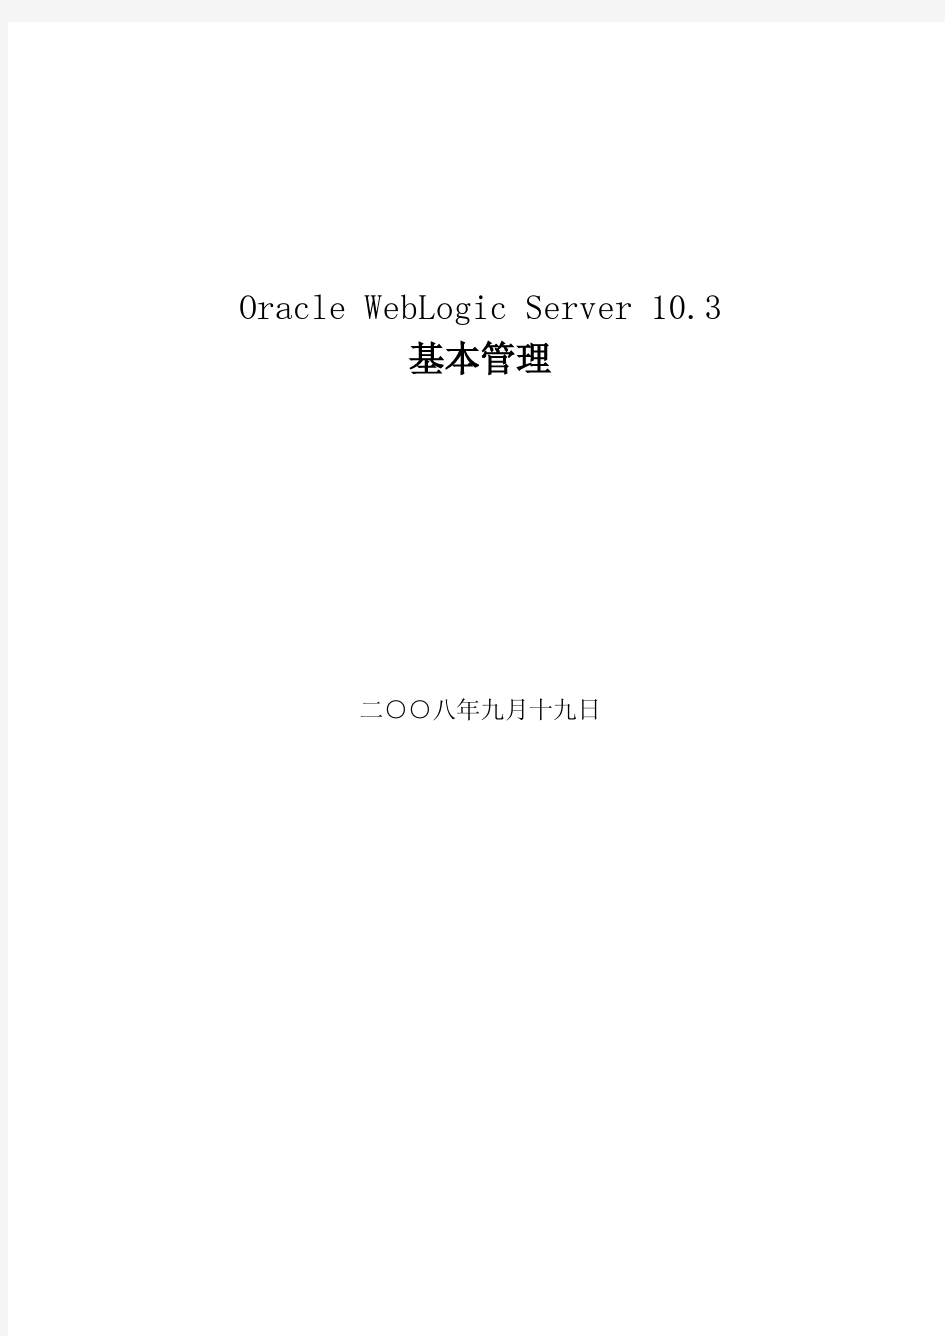 Oracle+WebLogic+Server+10.3+指导手册